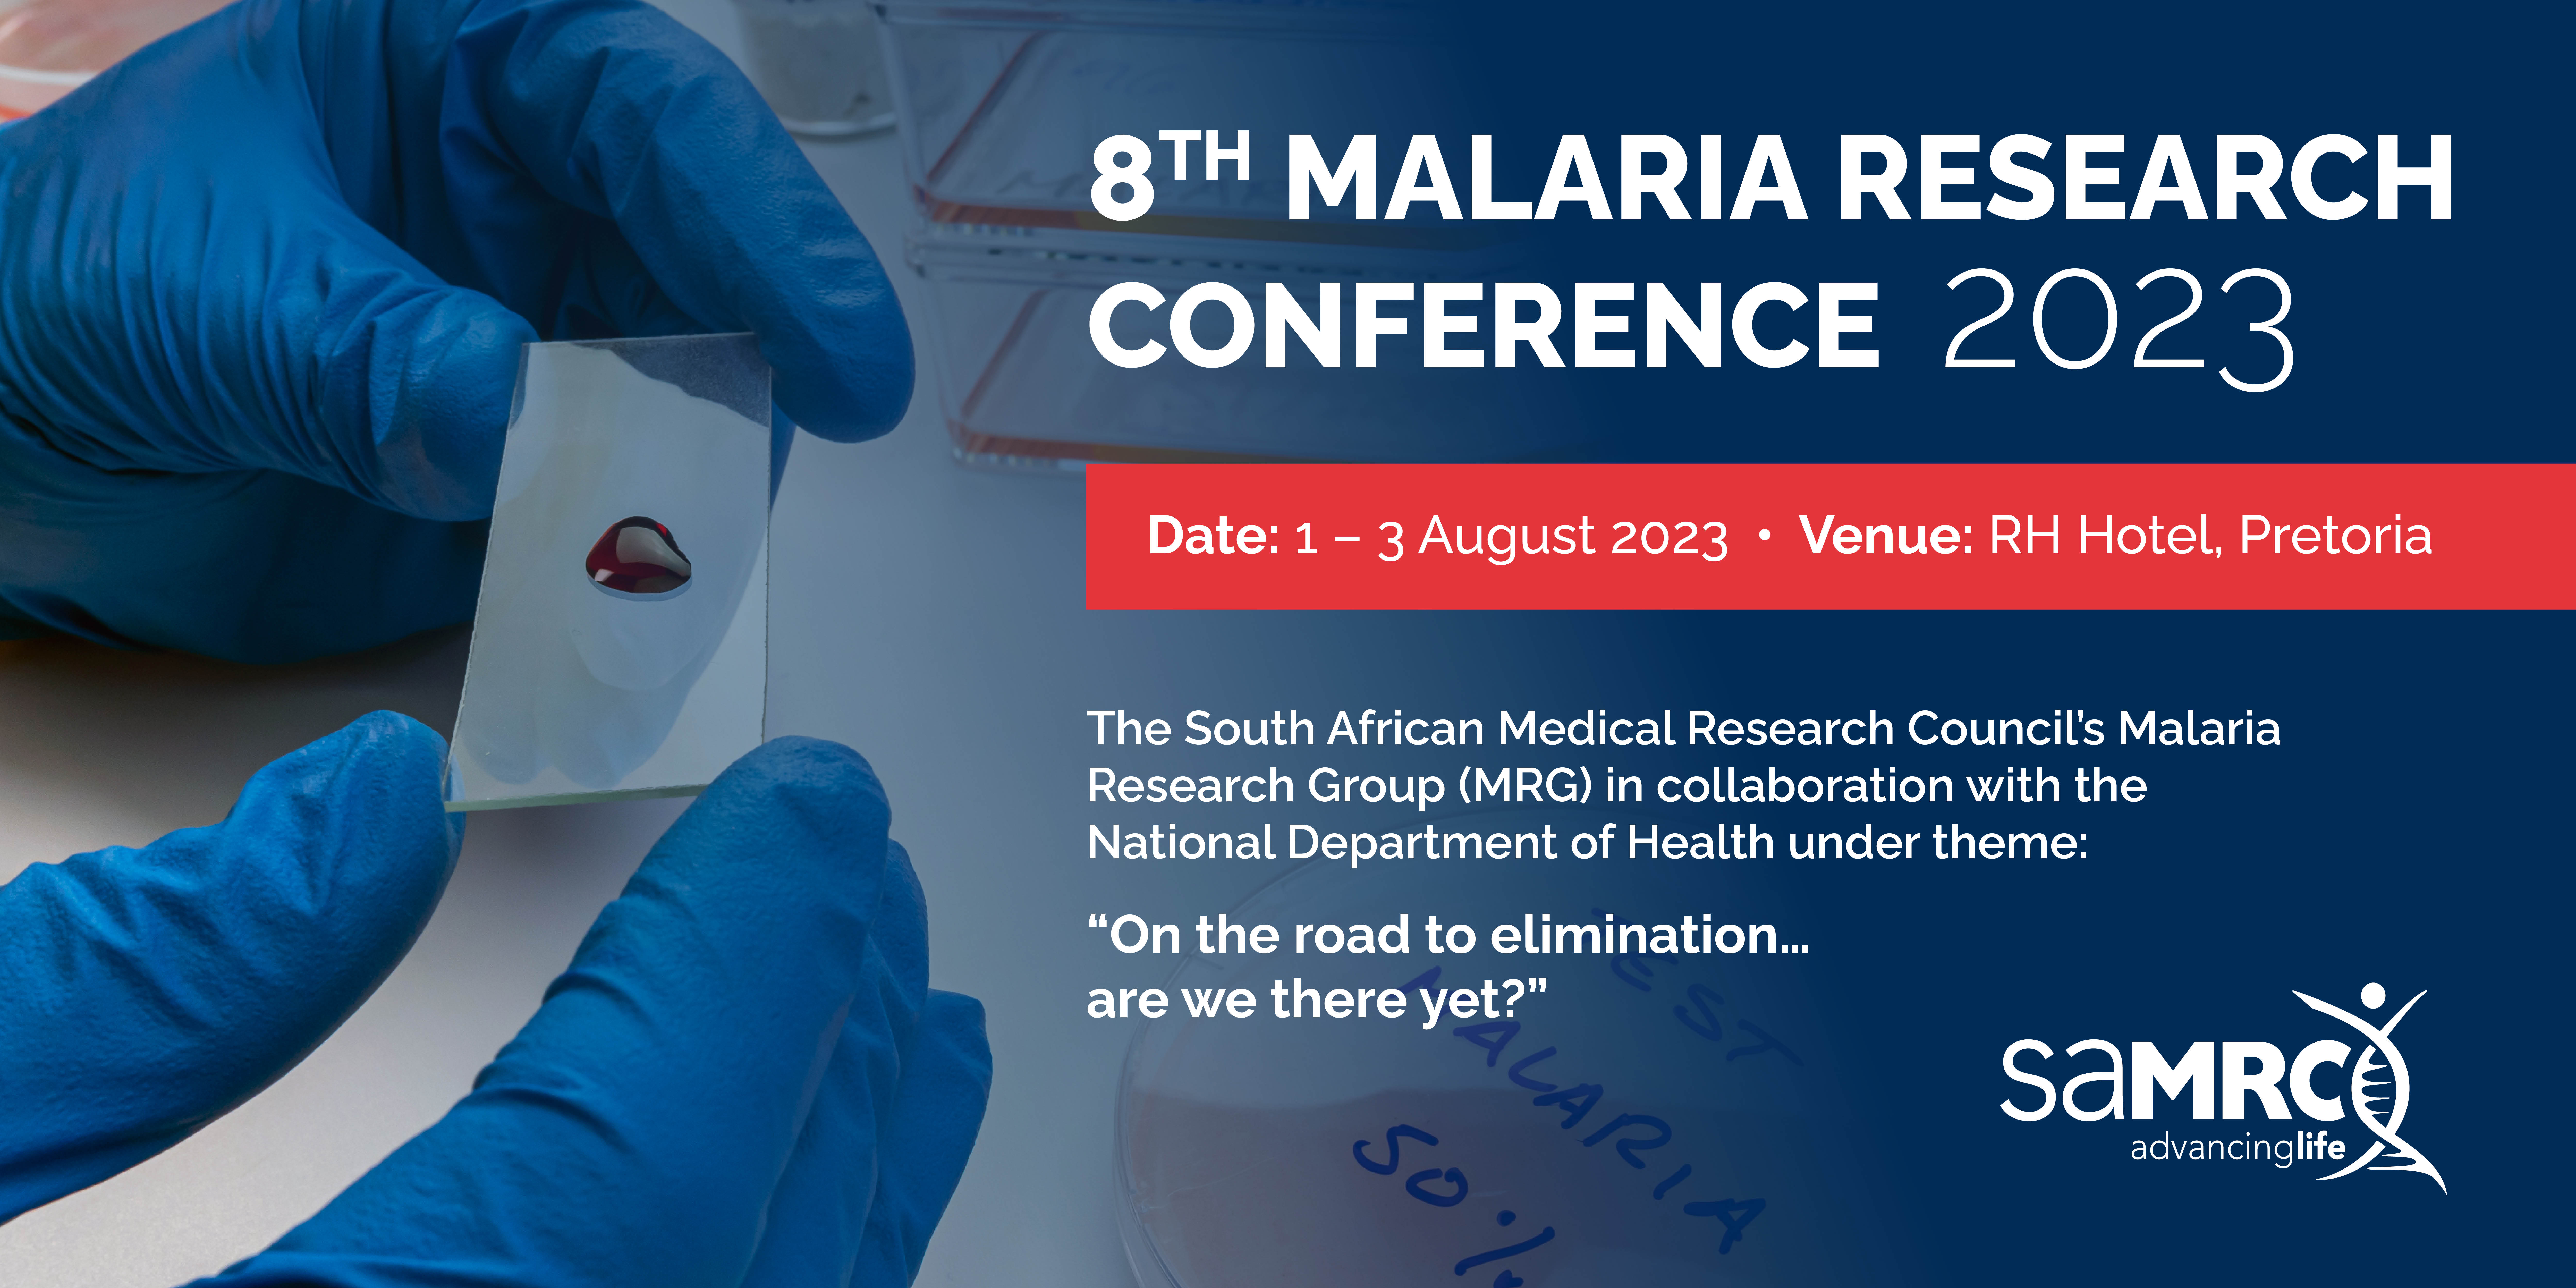 Malaria Conference